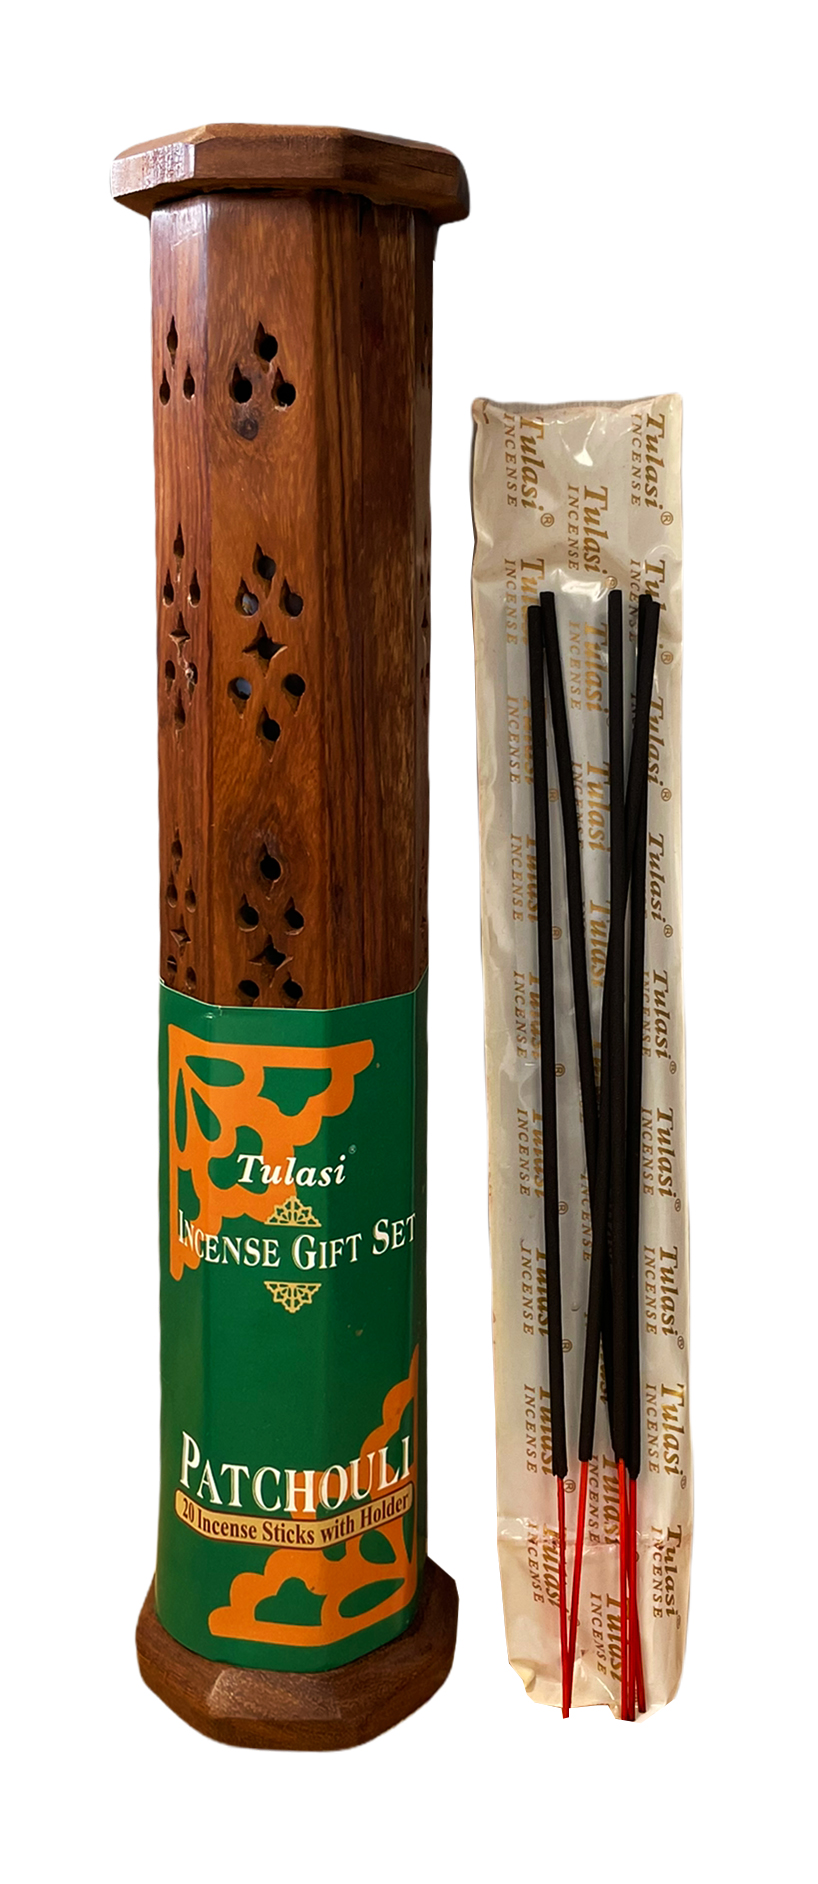 Porte encens tour Elephant en bois 30cm avec 20 bâtonnets encens Tulasi Patchouli